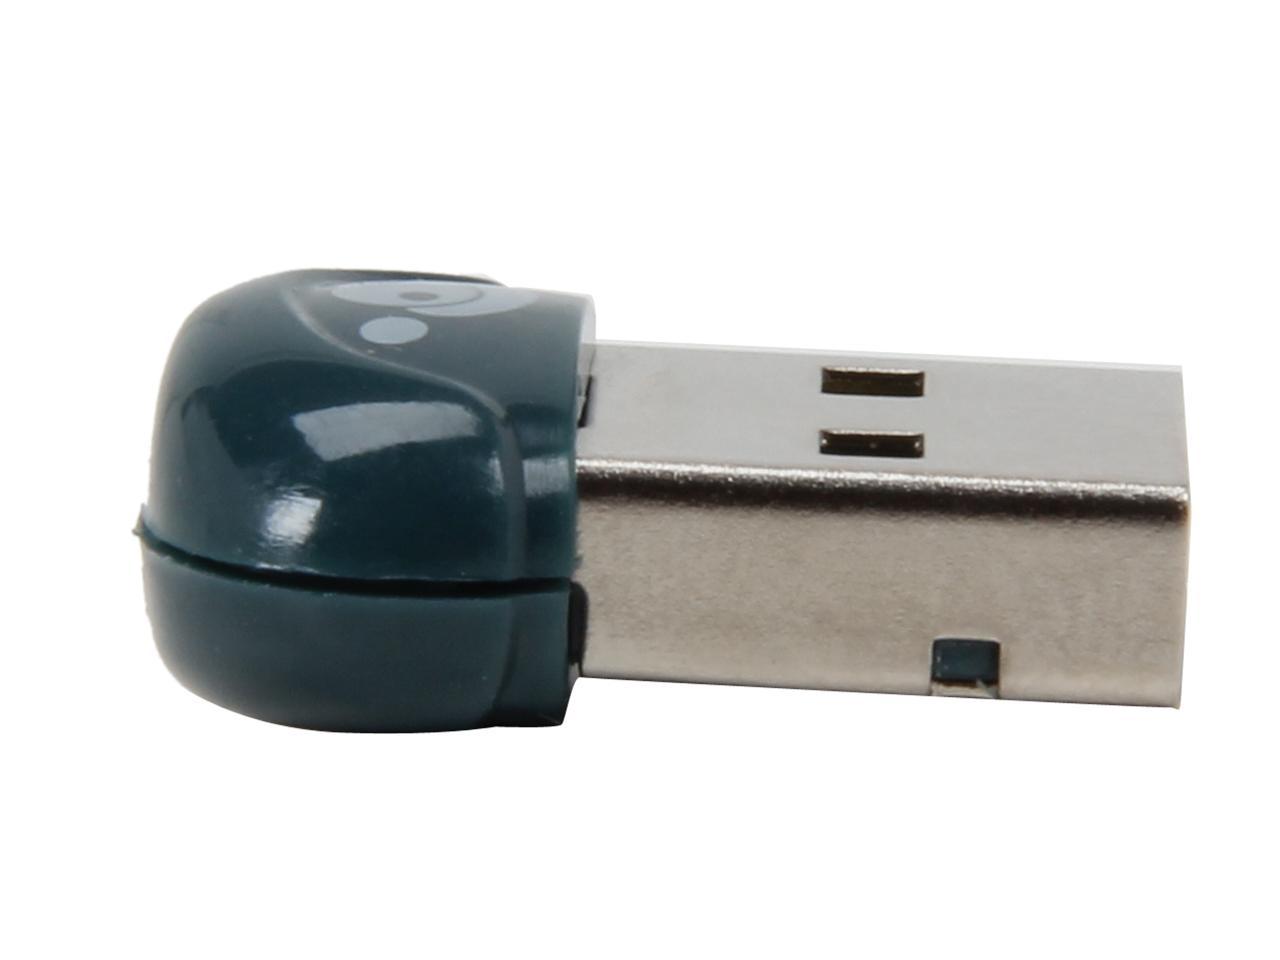 IOGEAR GBU521 USB Bluetooth 4.0 Micro Adapter